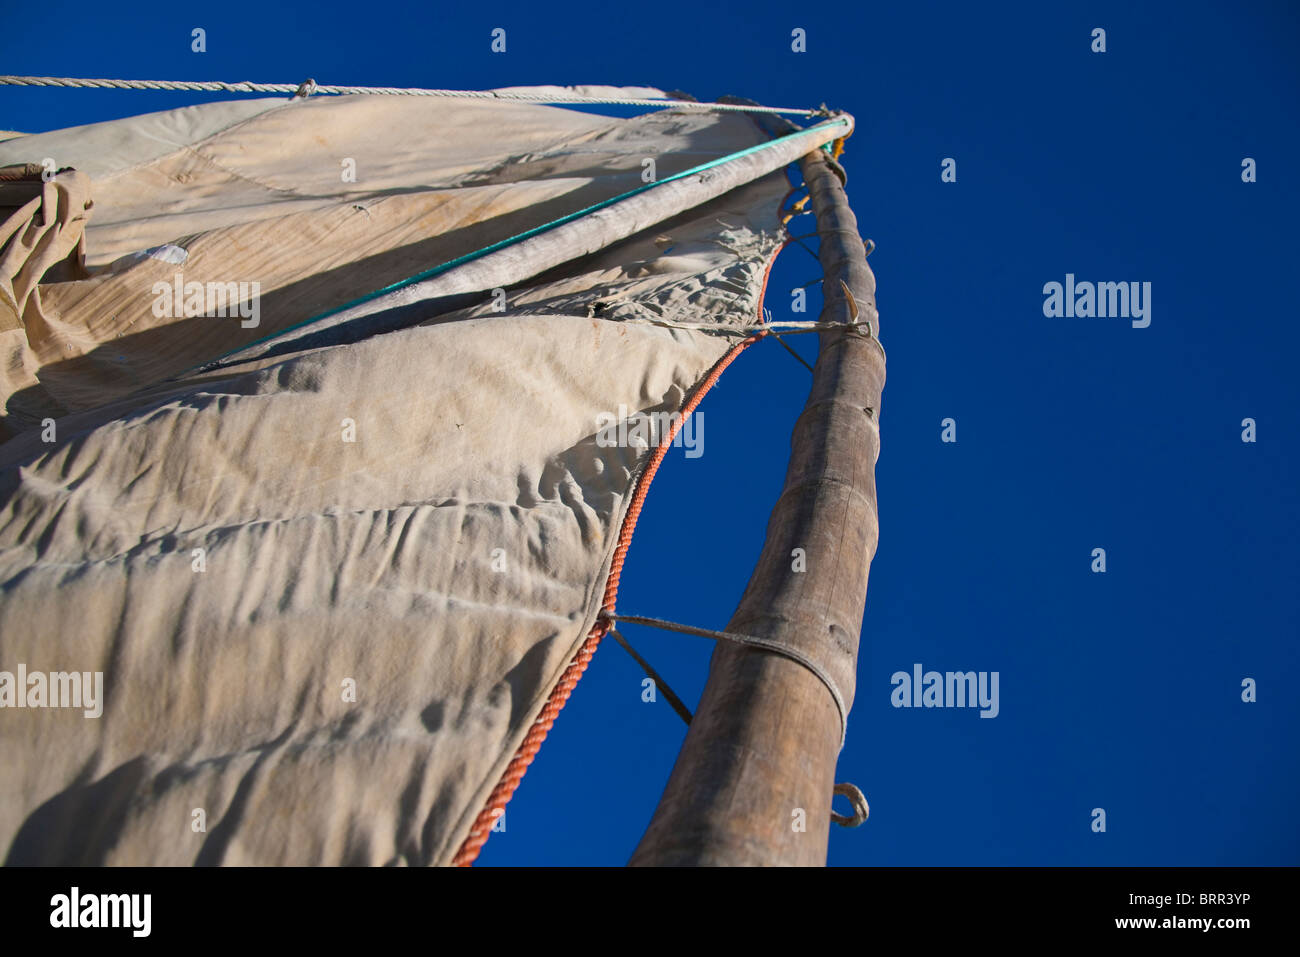 Niedrigen Winkel Blick auf dem Mast und Canvas Segel einer Dhau oder traditionellen Fischerboot Stockfoto